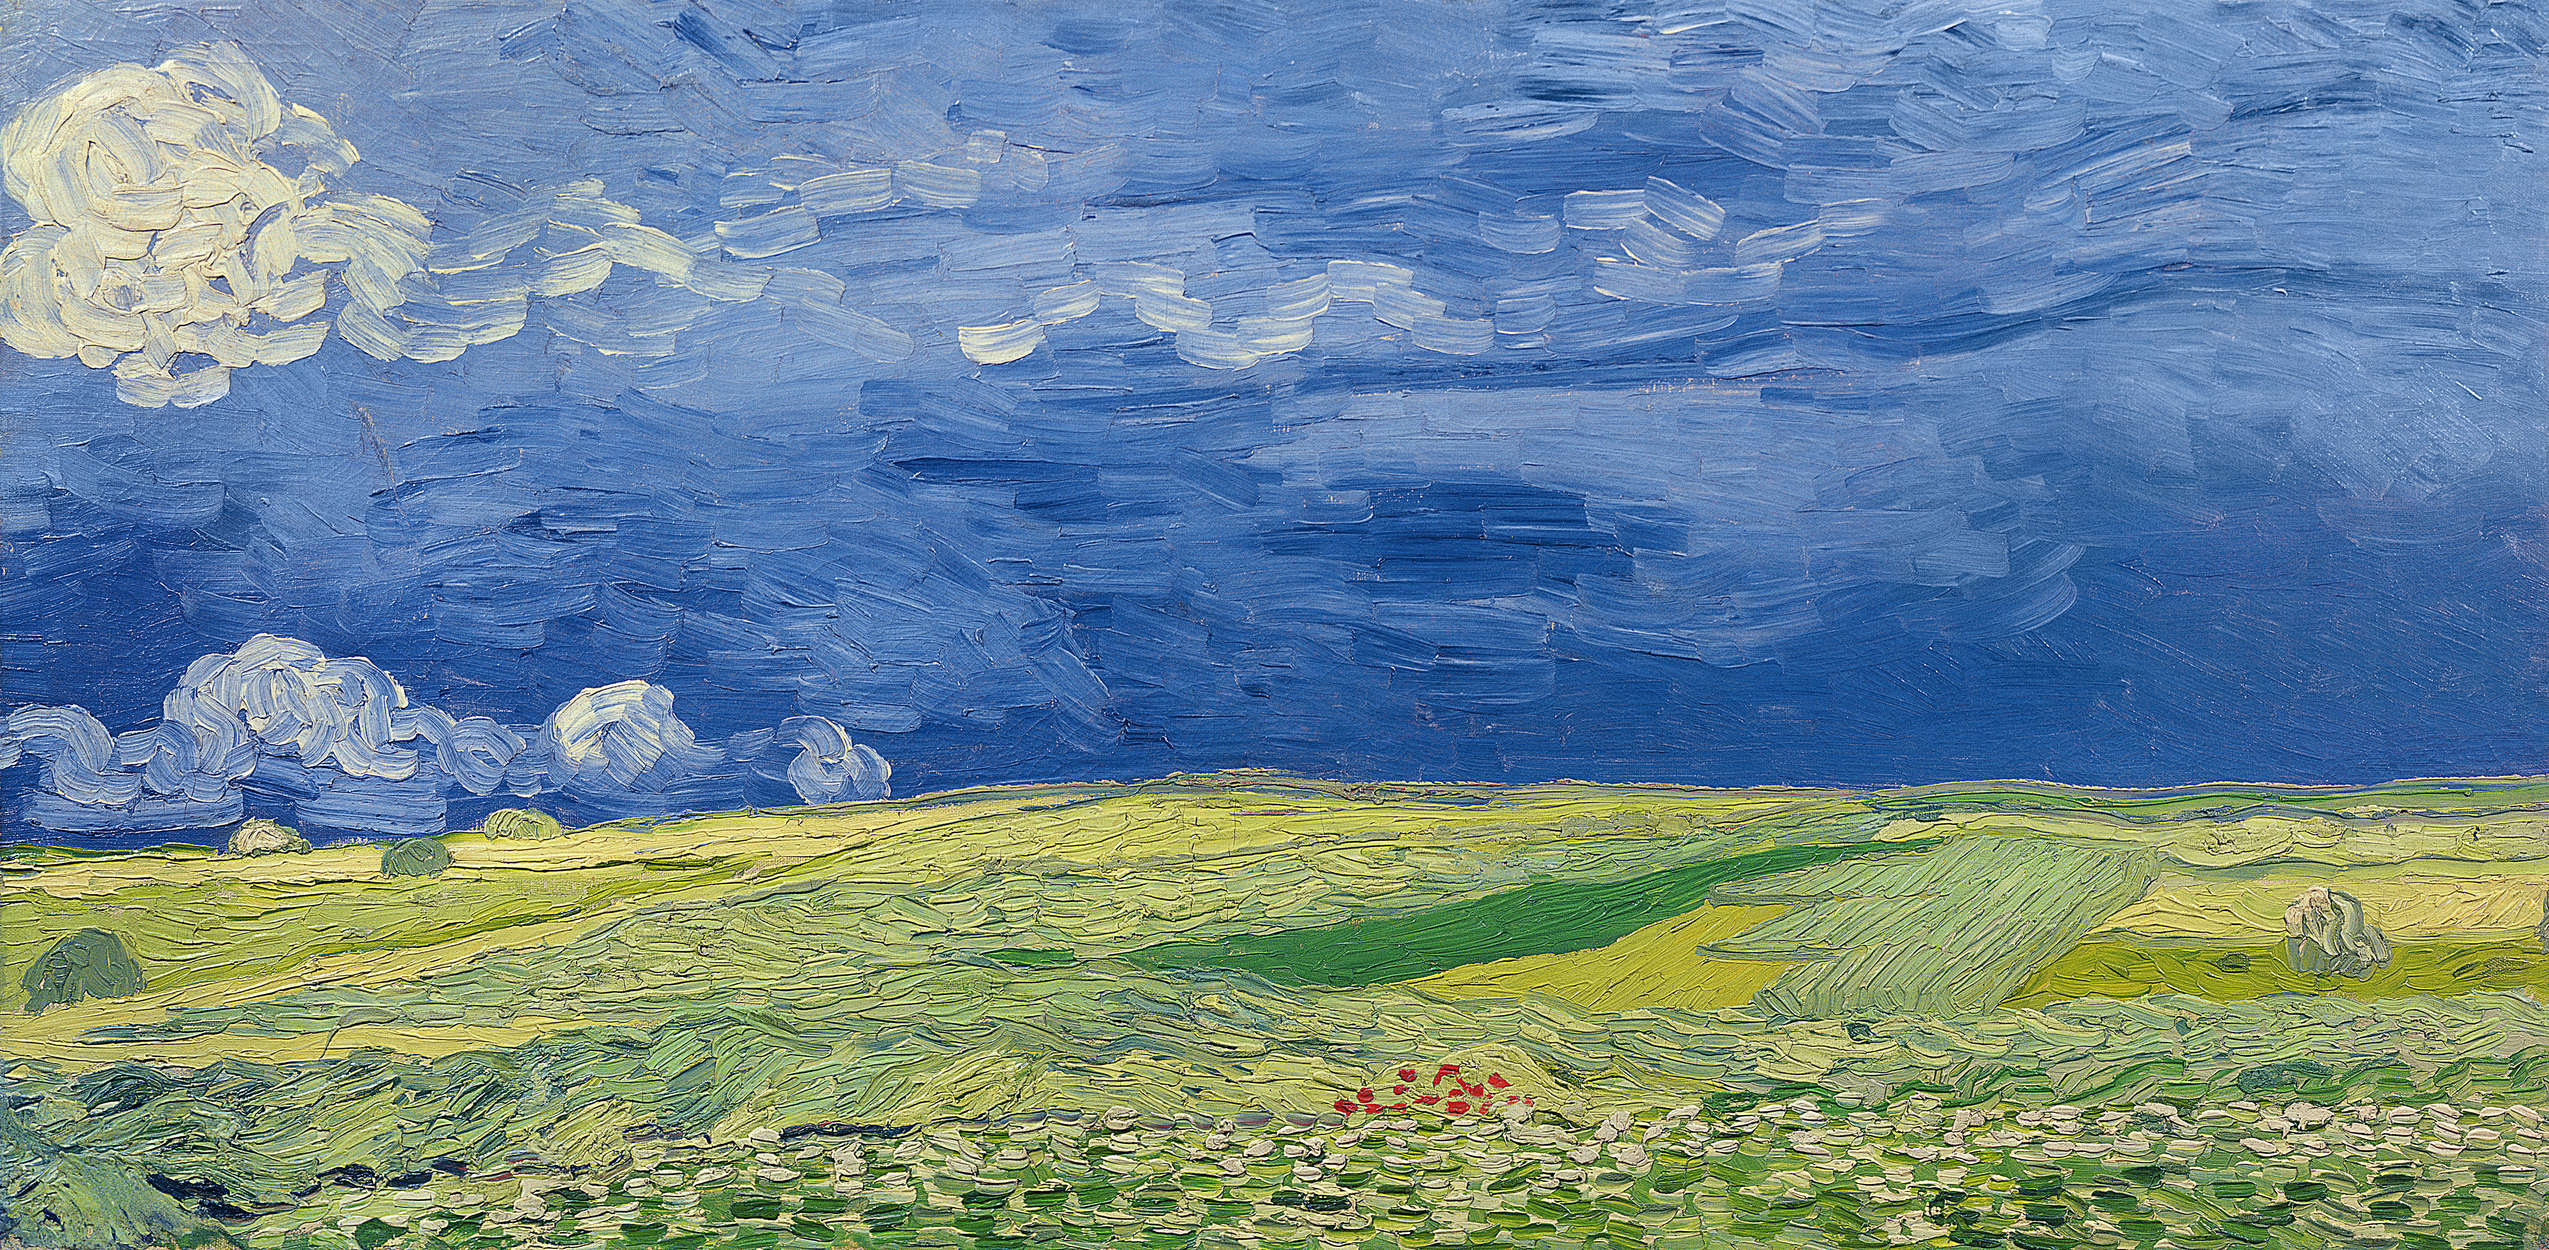             Papier peint "Champs de blé sous des nuages d'orage" de Vincent van Gogh
        